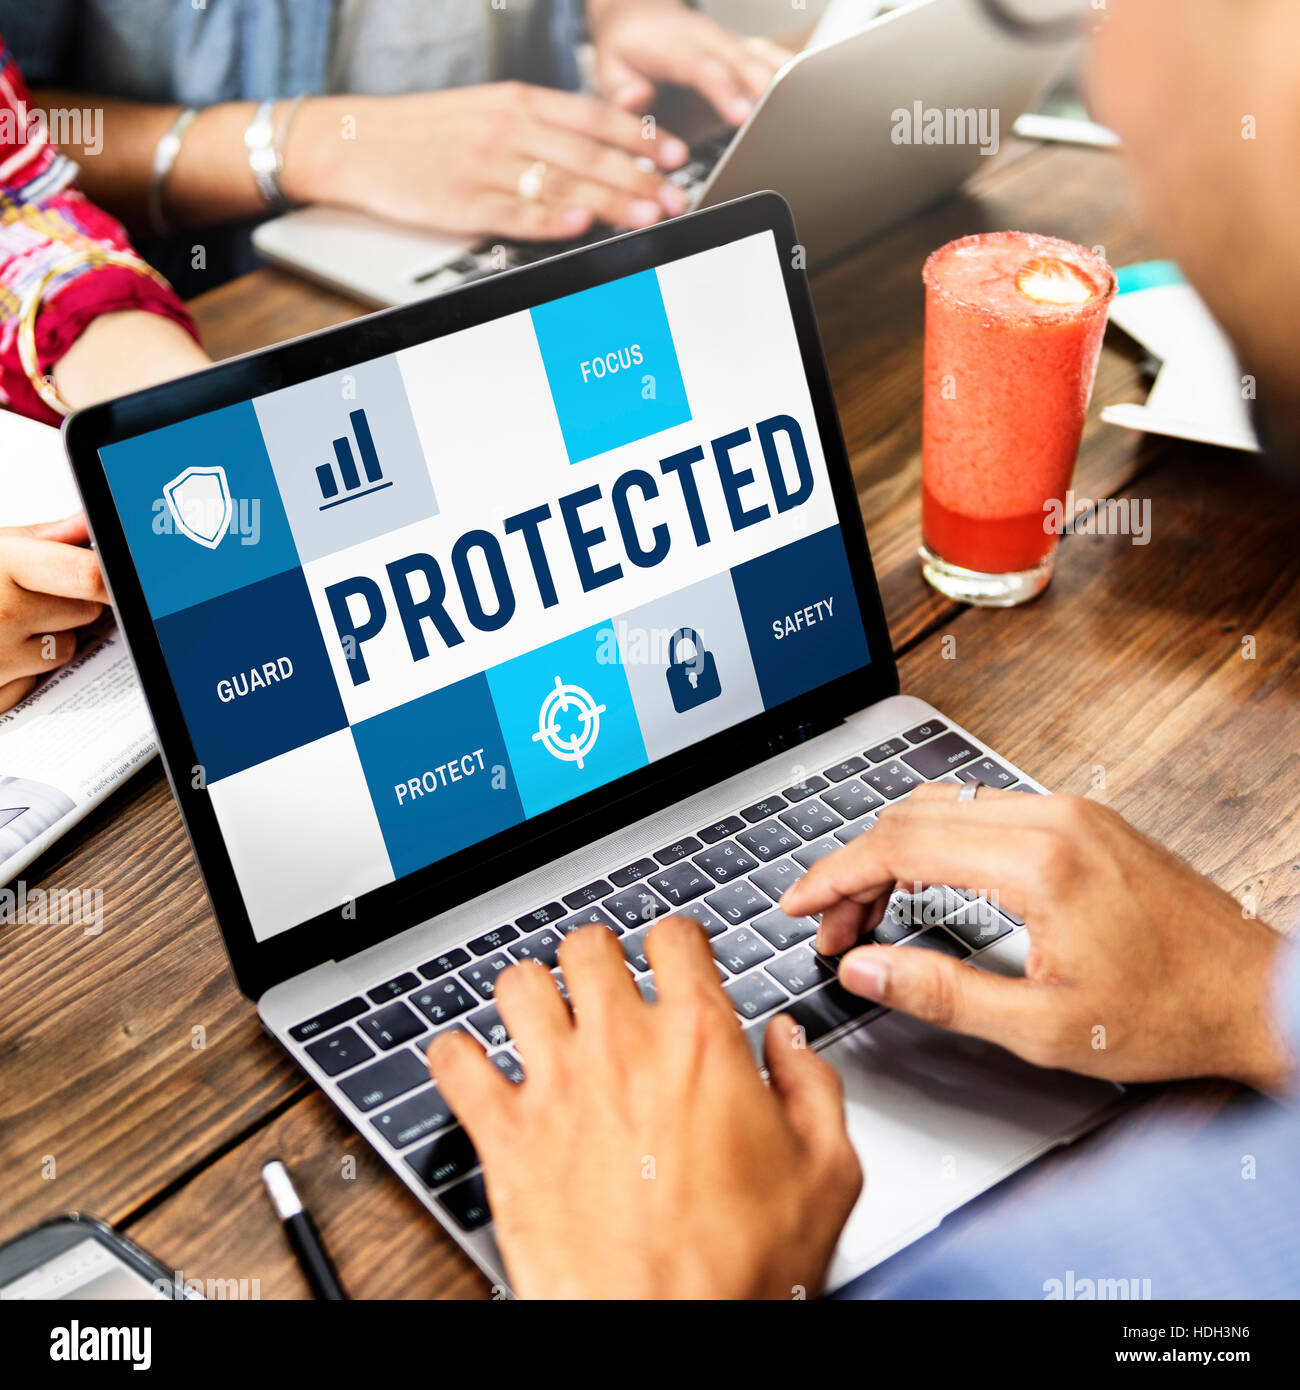 Sicherheit Datenschutz Datenschutzkonzept Stockfoto